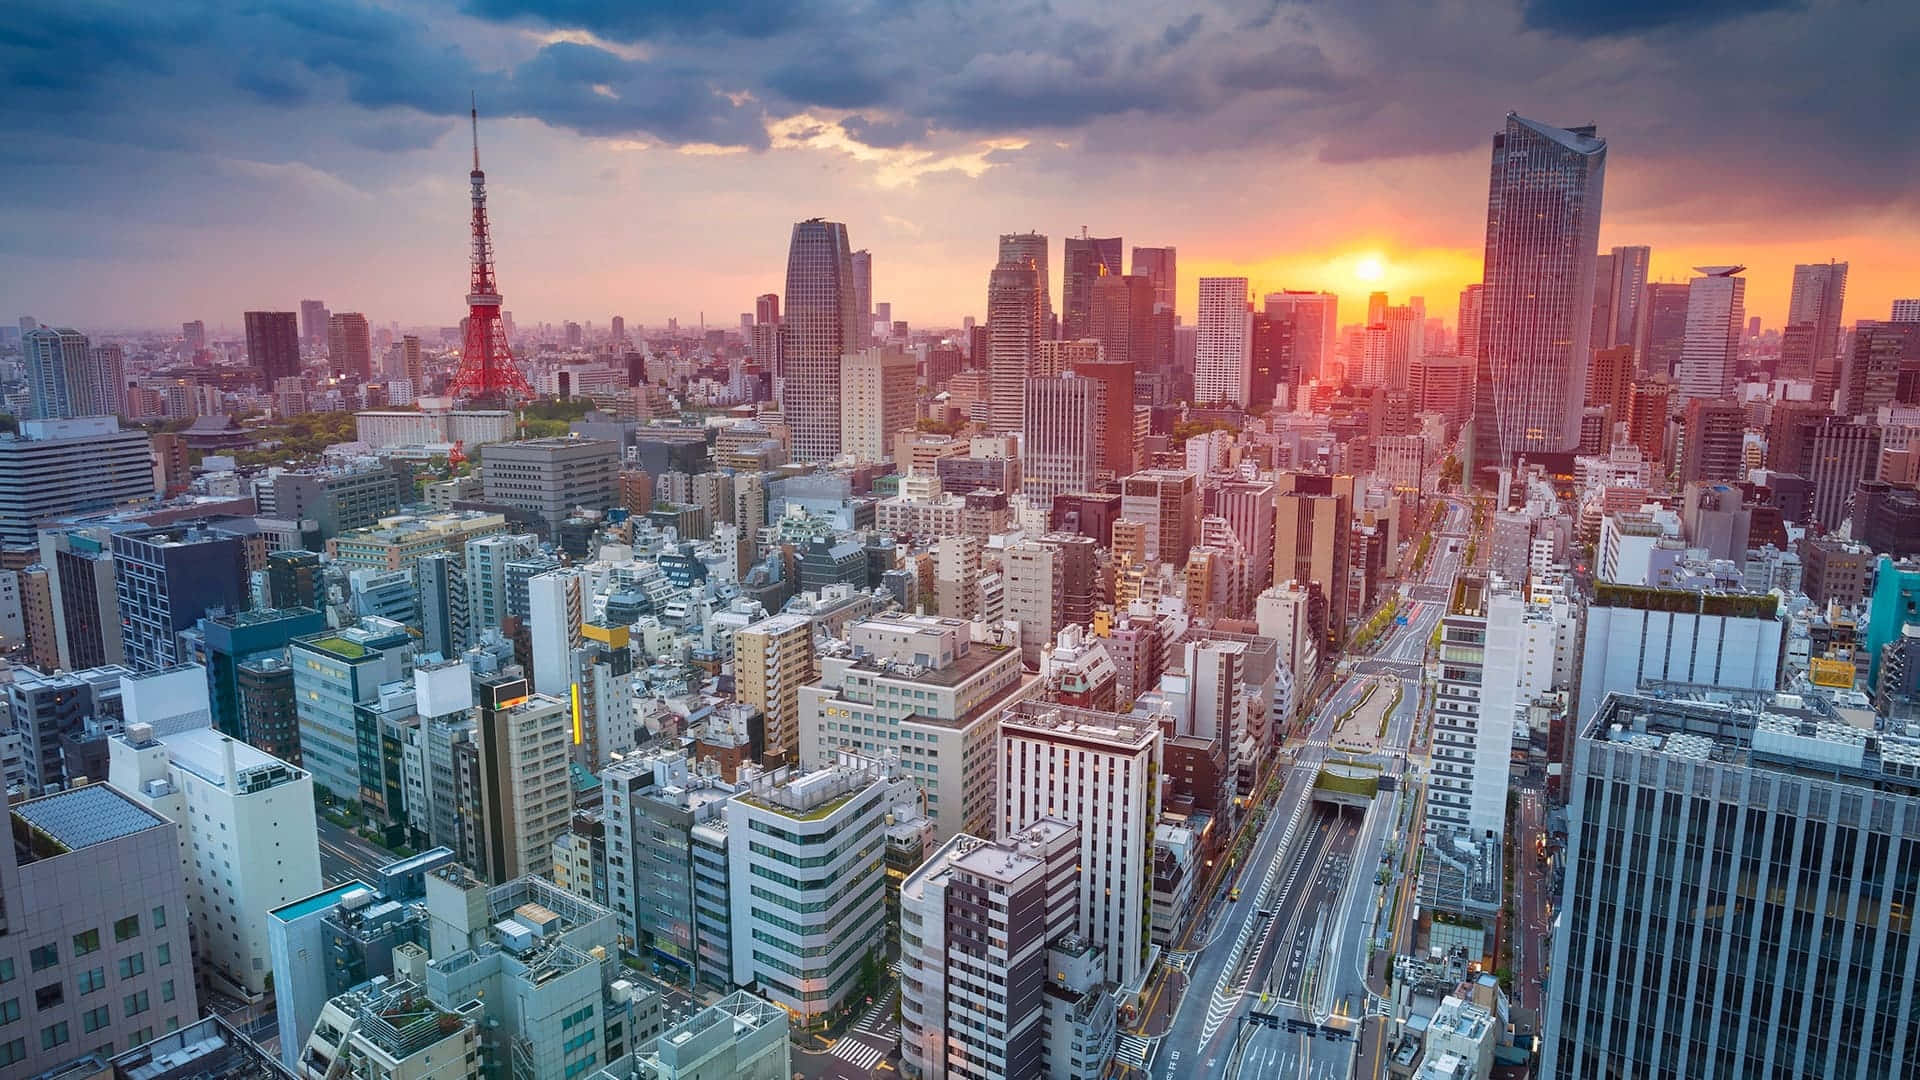 Fondode Pantalla De Tokio Tokio Durante Una Puesta De Sol